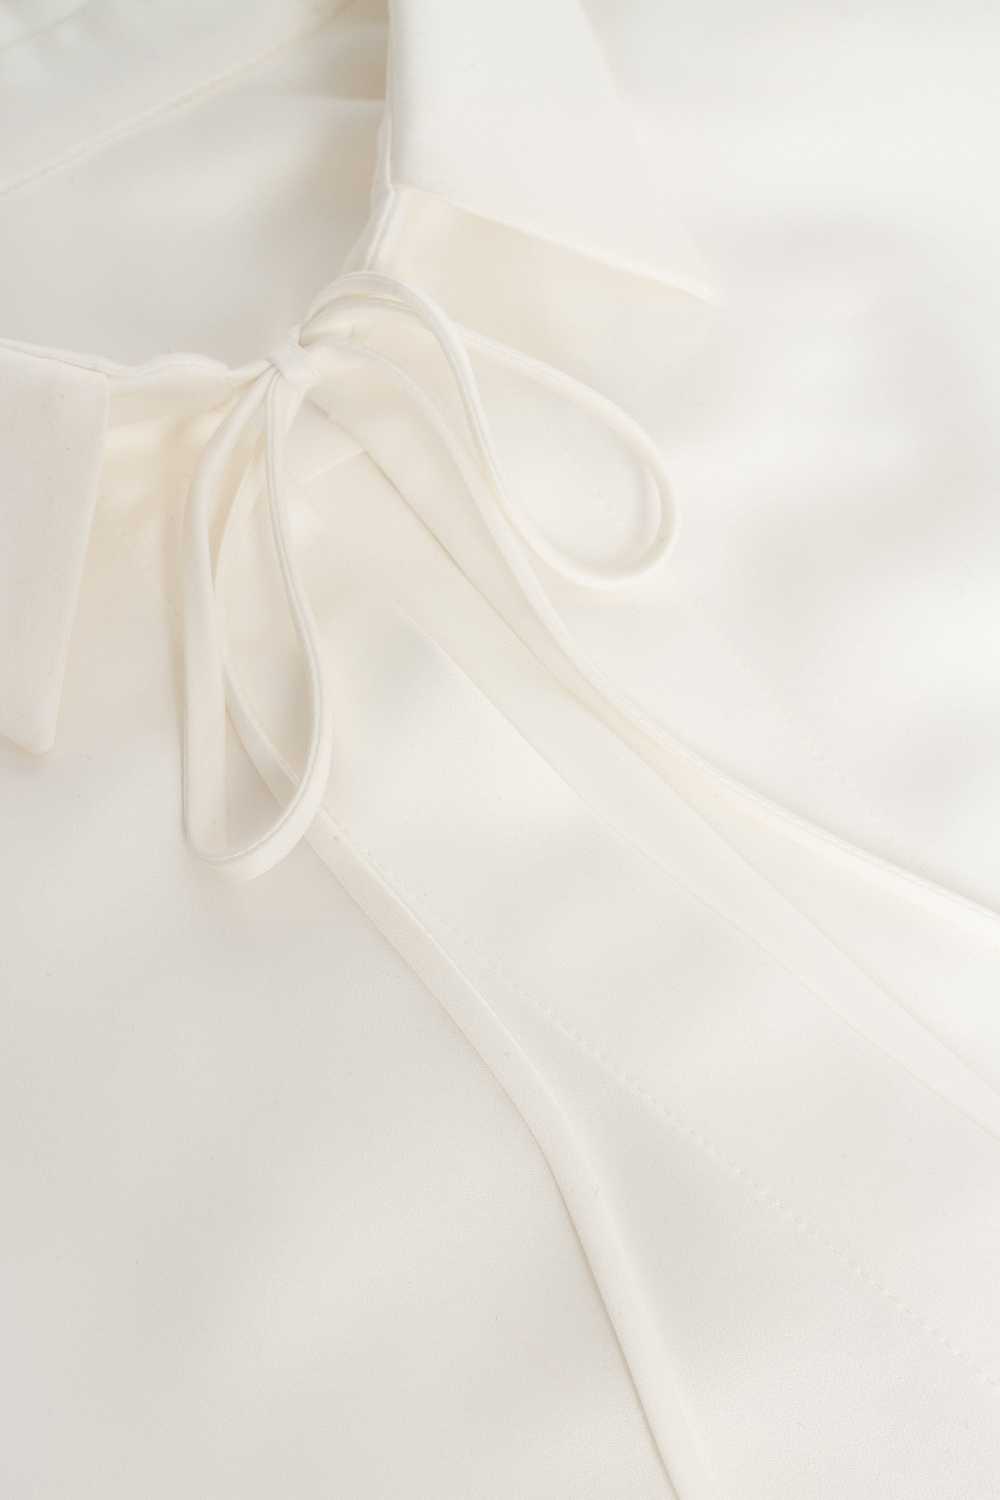 Milla Front-tie satin blouse in white, Xo Xo - image 6